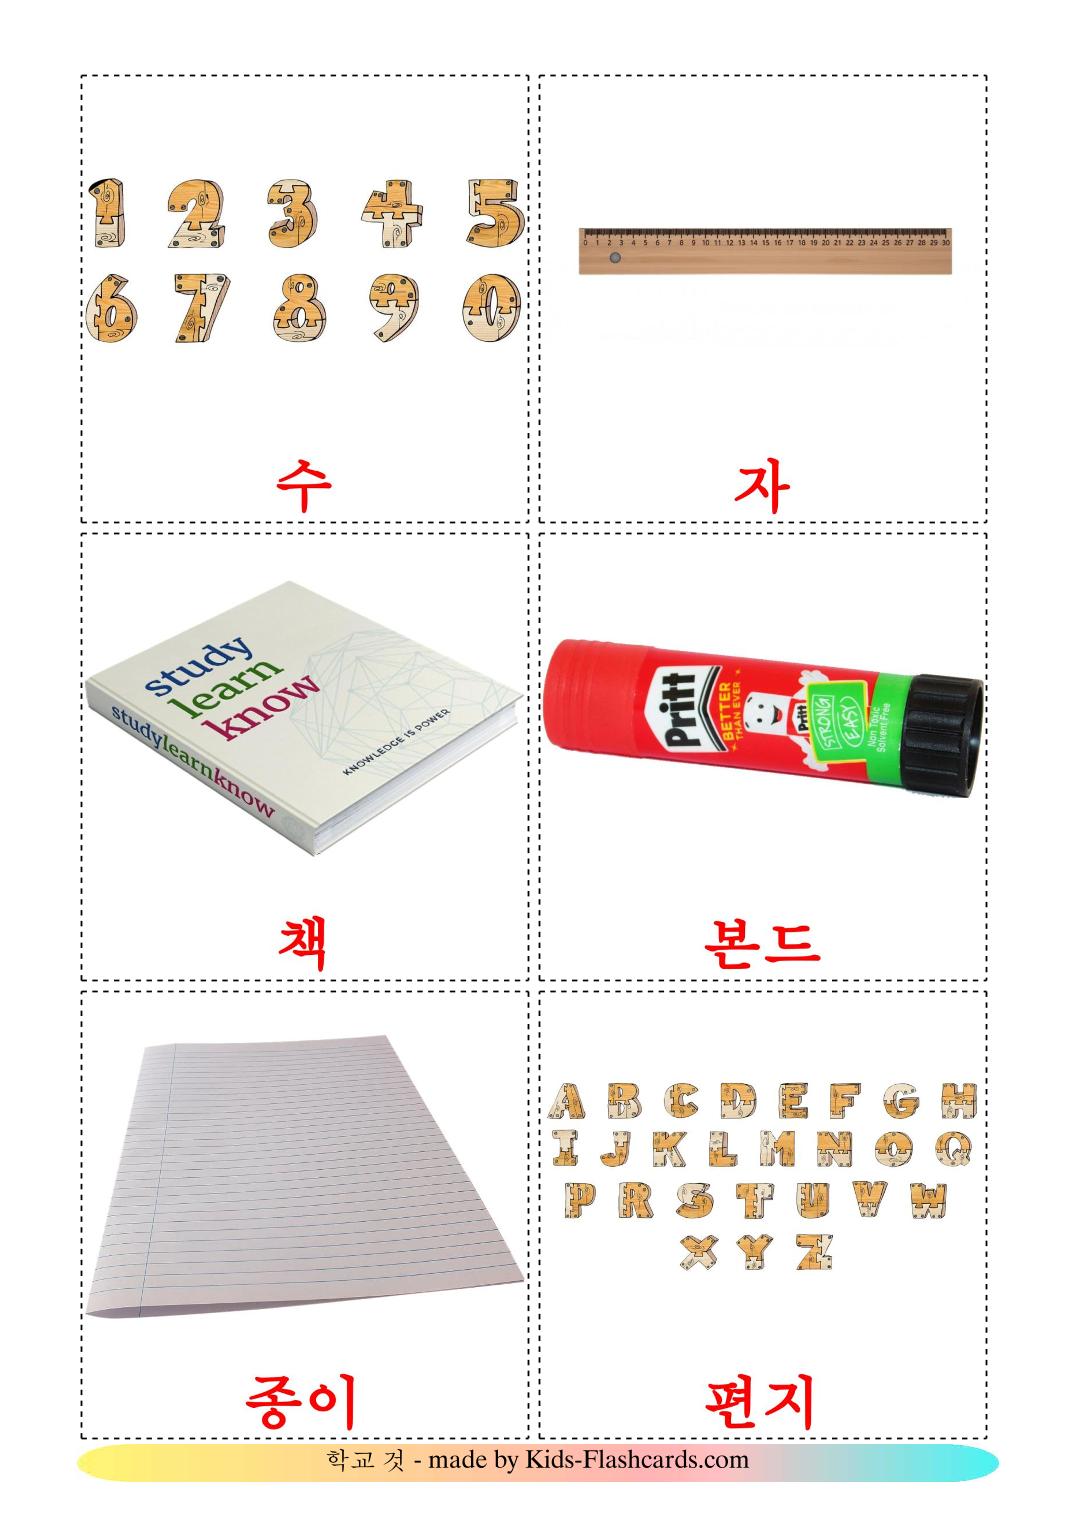 Objetos de sala de aula - 36 Flashcards coreanoes gratuitos para impressão